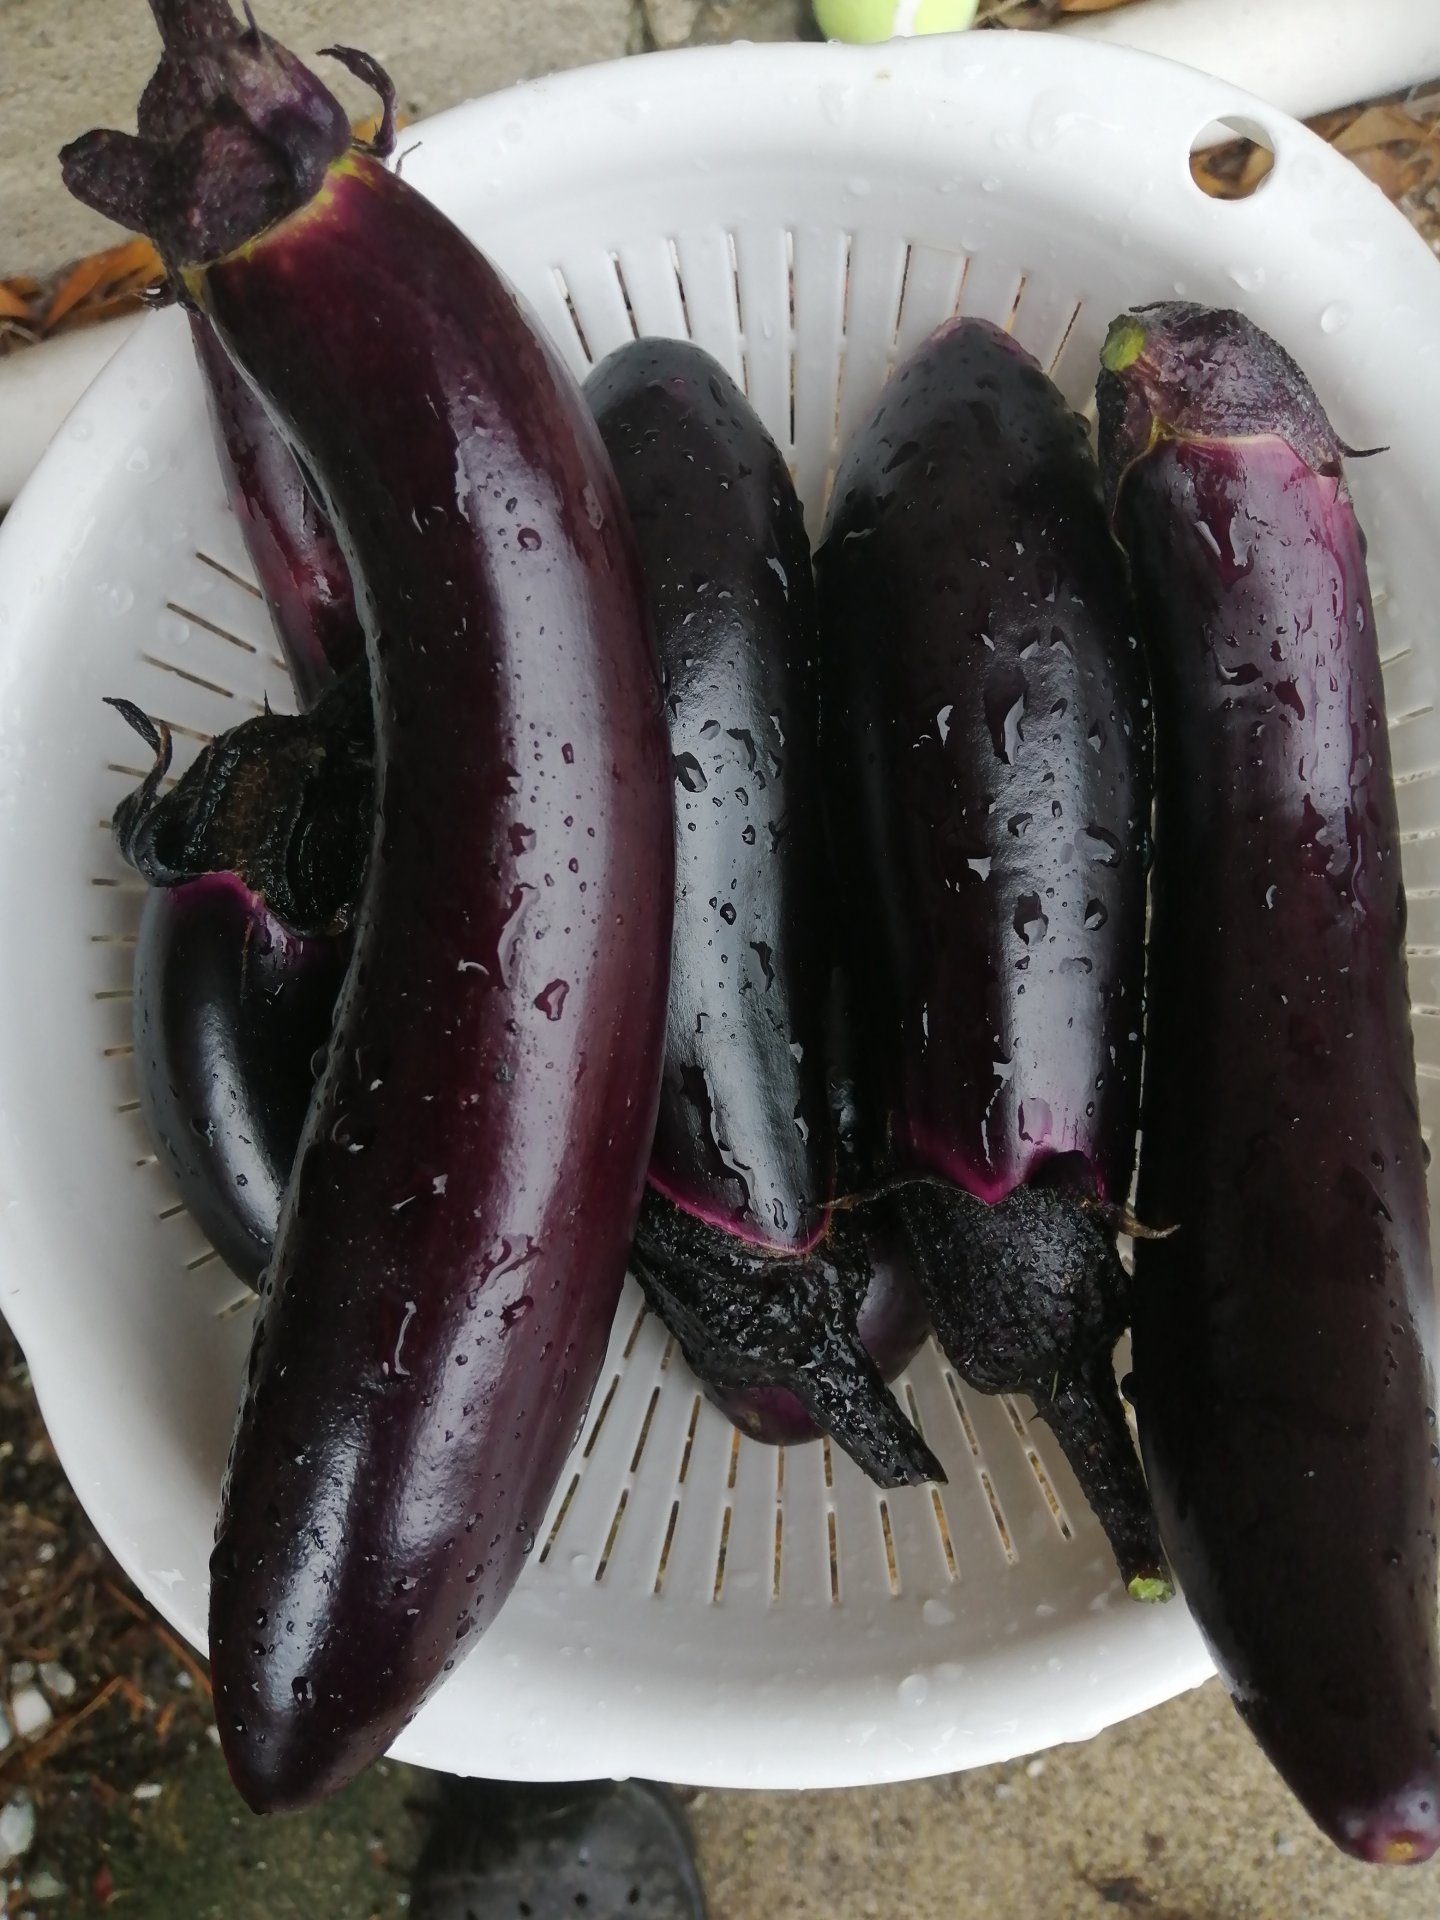 Free eggplant!